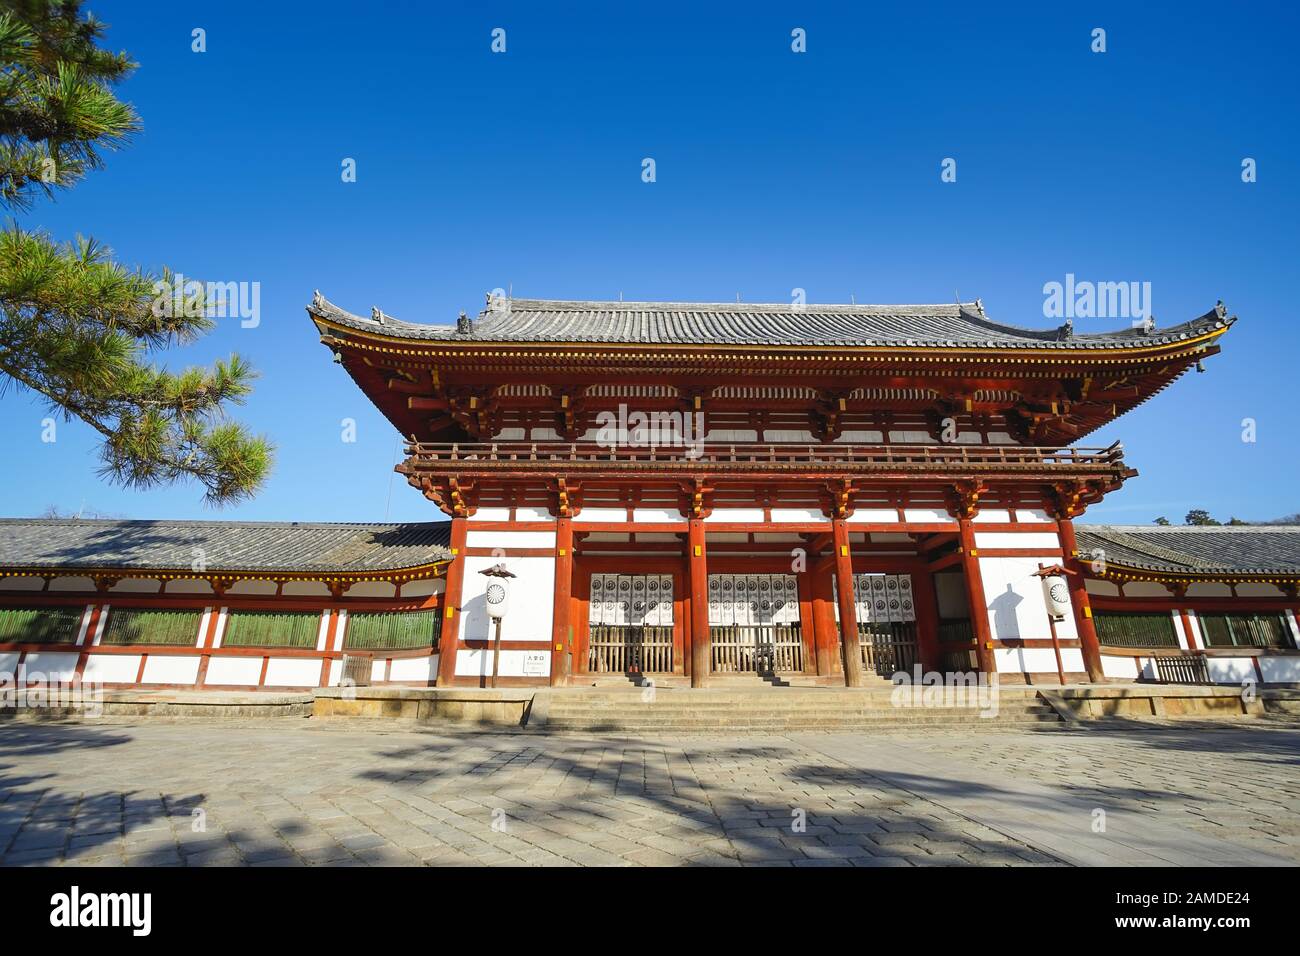 Hermosa escena de la segunda puerta de madera del Templo Todaiji, este es el destino turístico más famoso de la ciudad de Nara en la zona de Kansai de Japón y esto Foto de stock